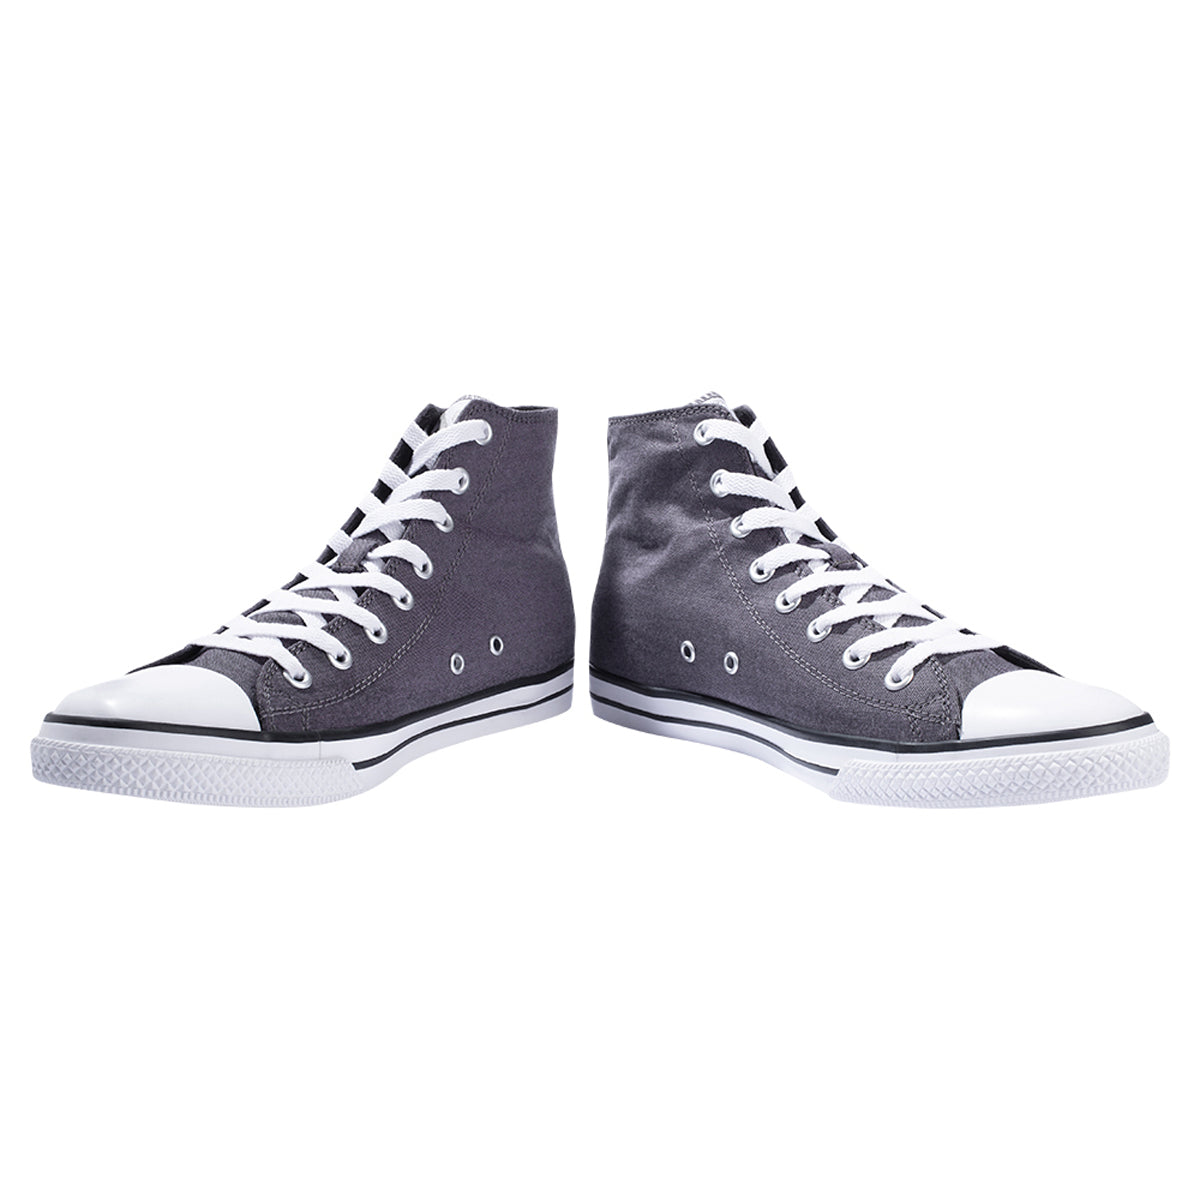 Eeken Grey Lightweight Casual Shoes For Men